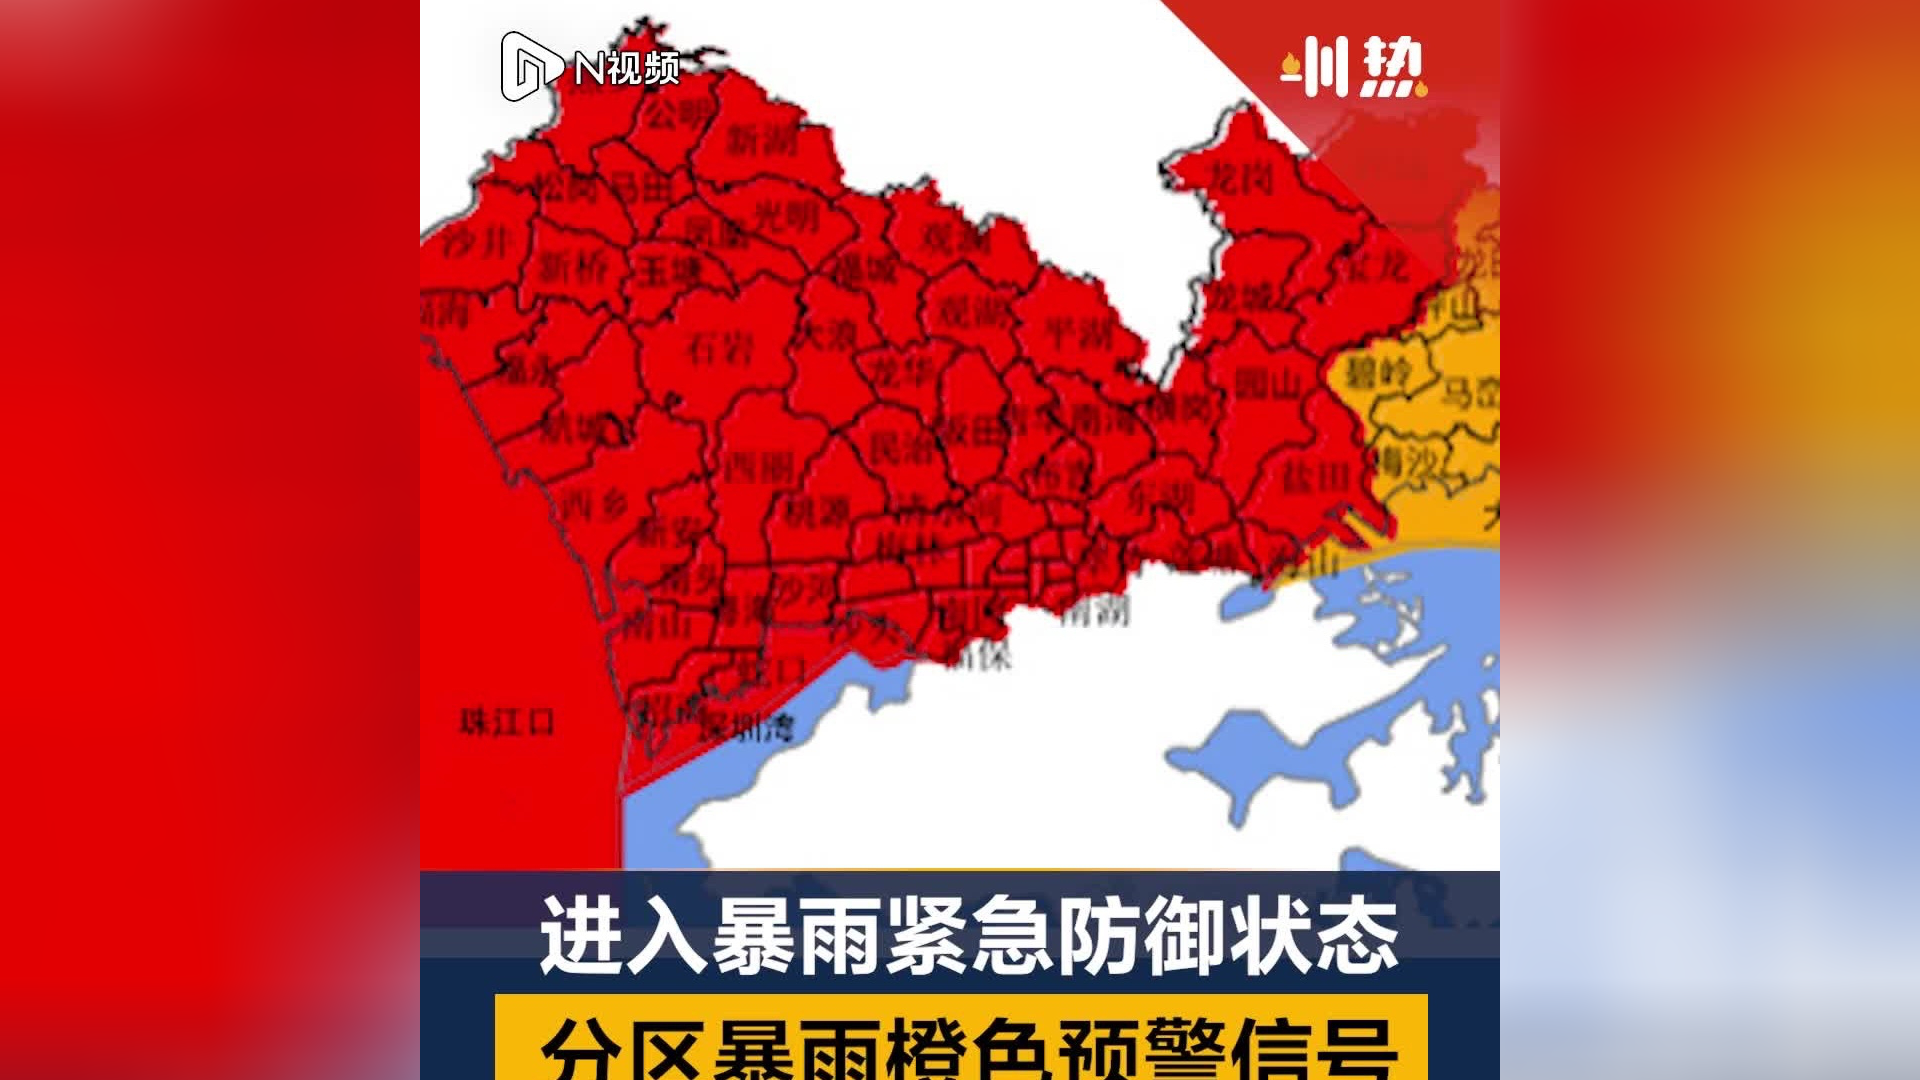 深圳分区暴雨橙色预警信号升级为红色